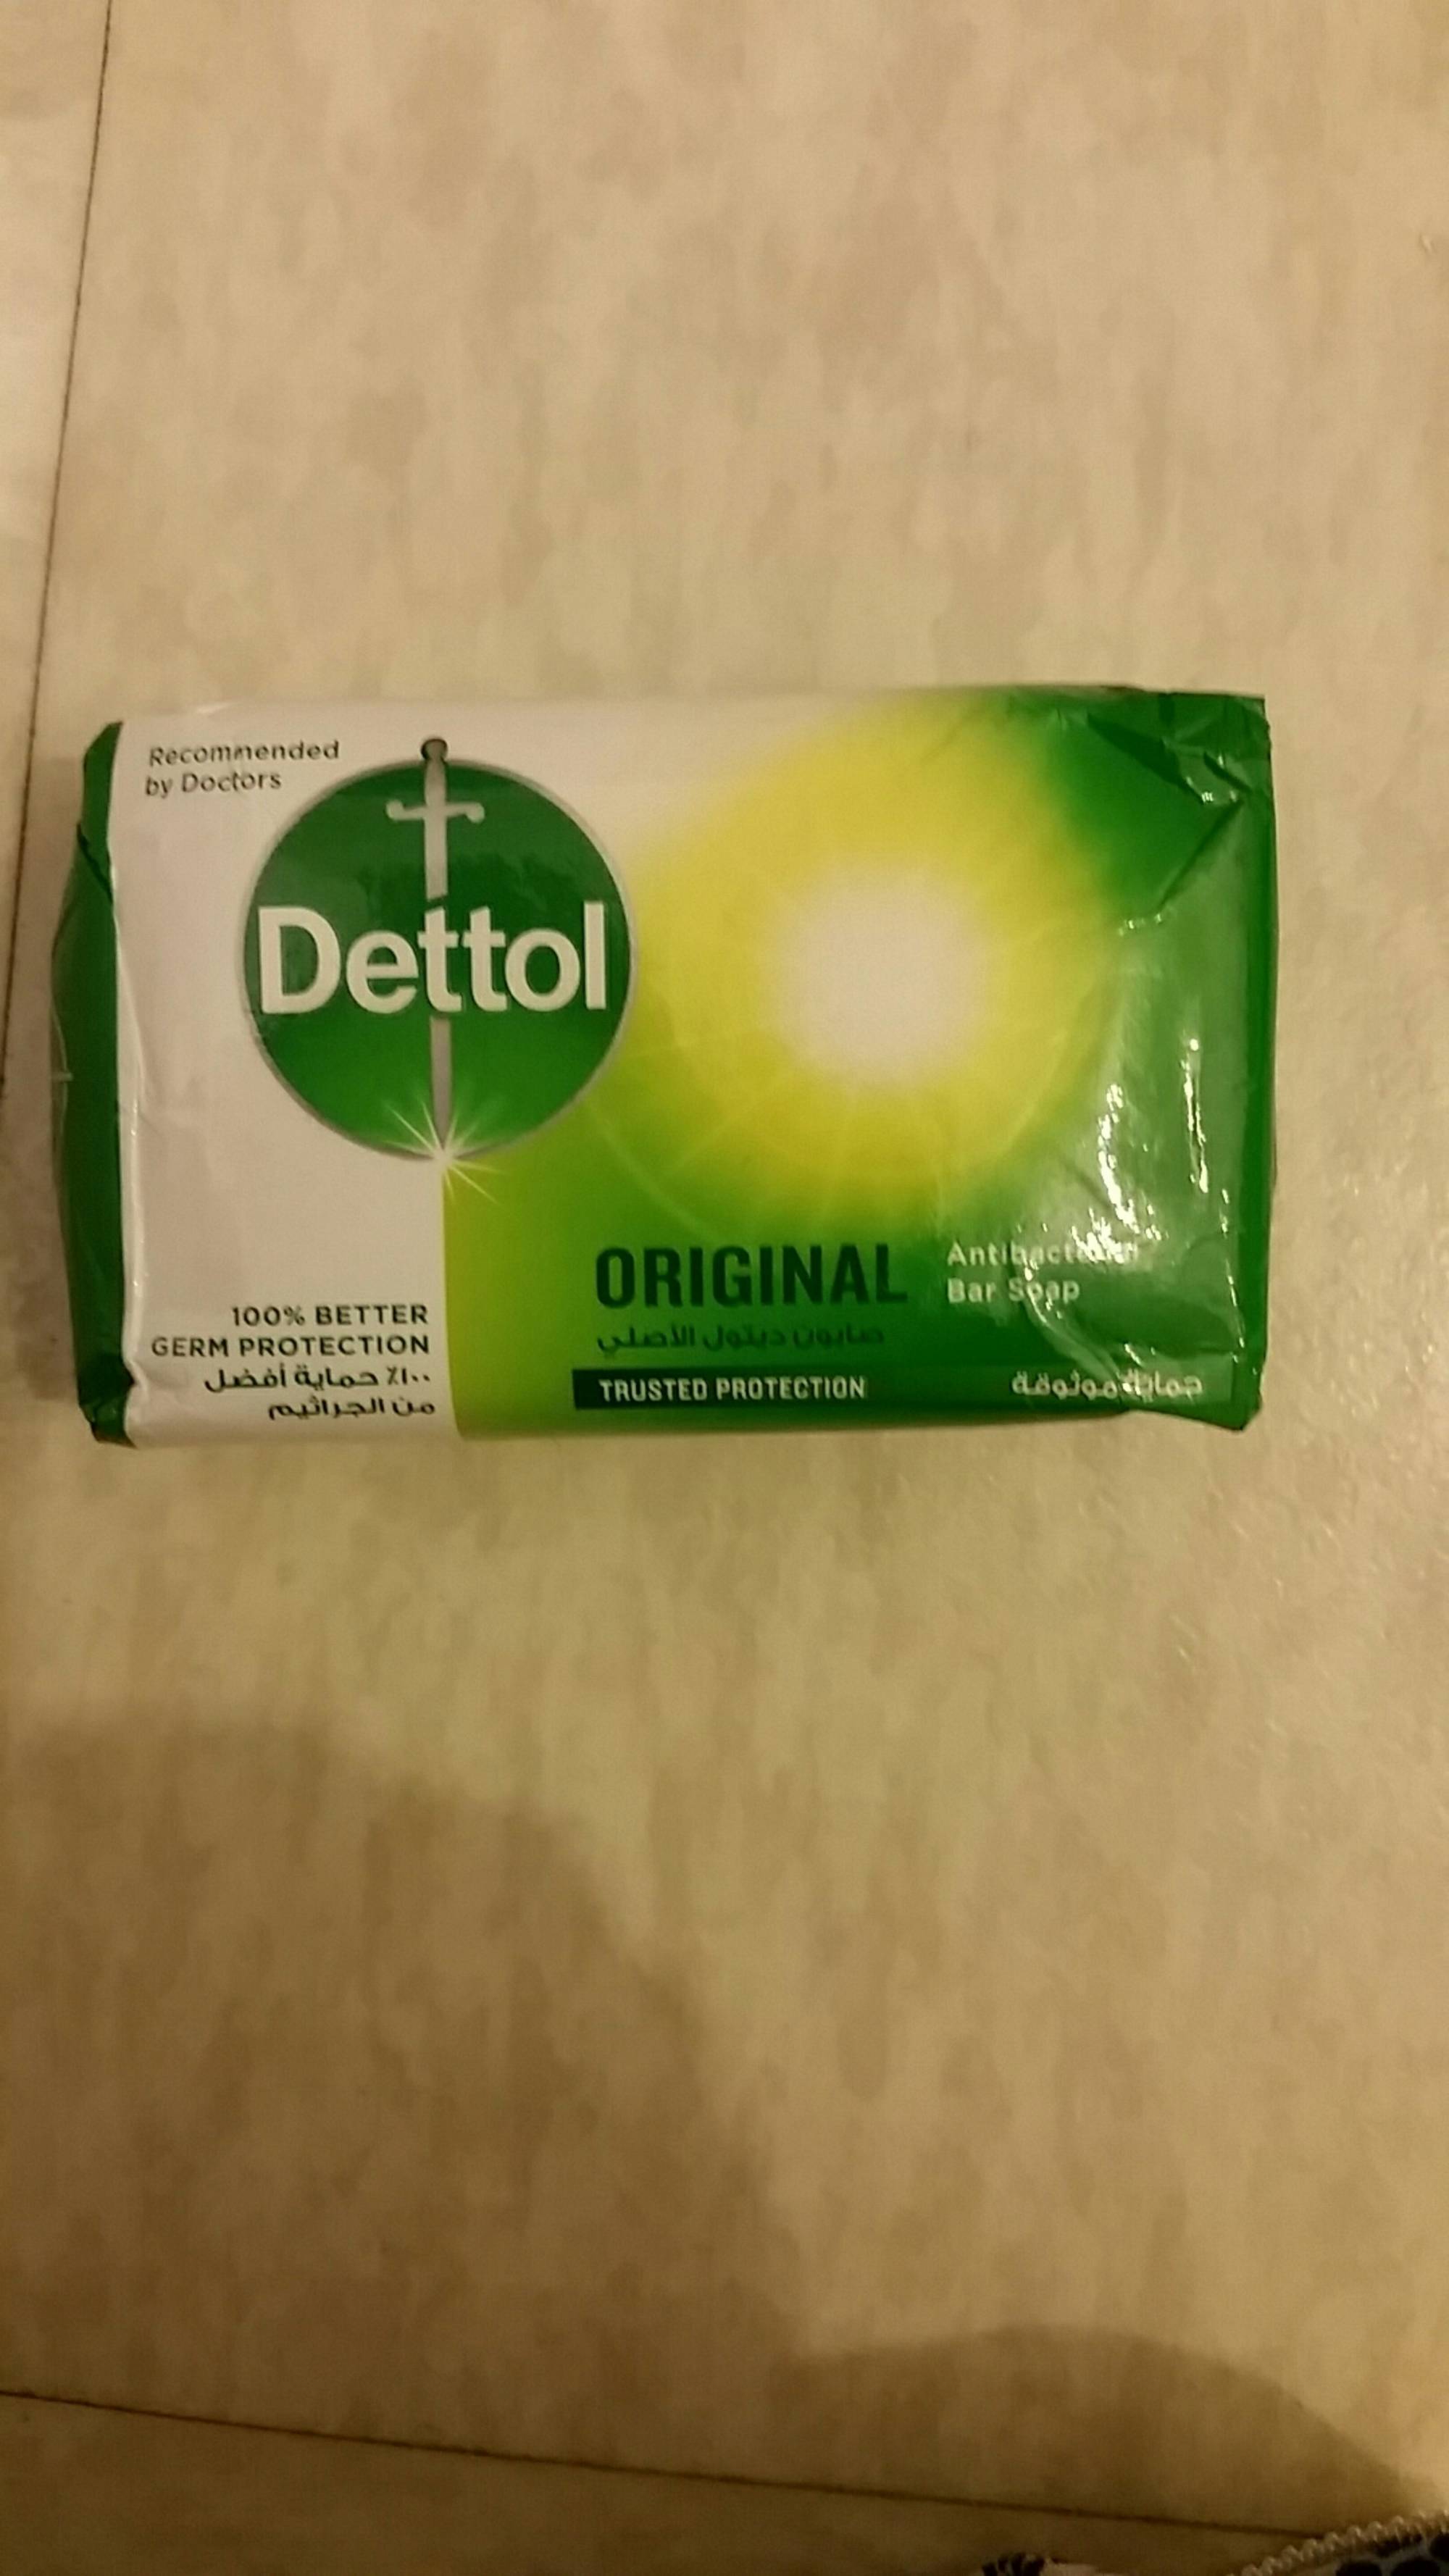 DETTOL - Original - Bar soap